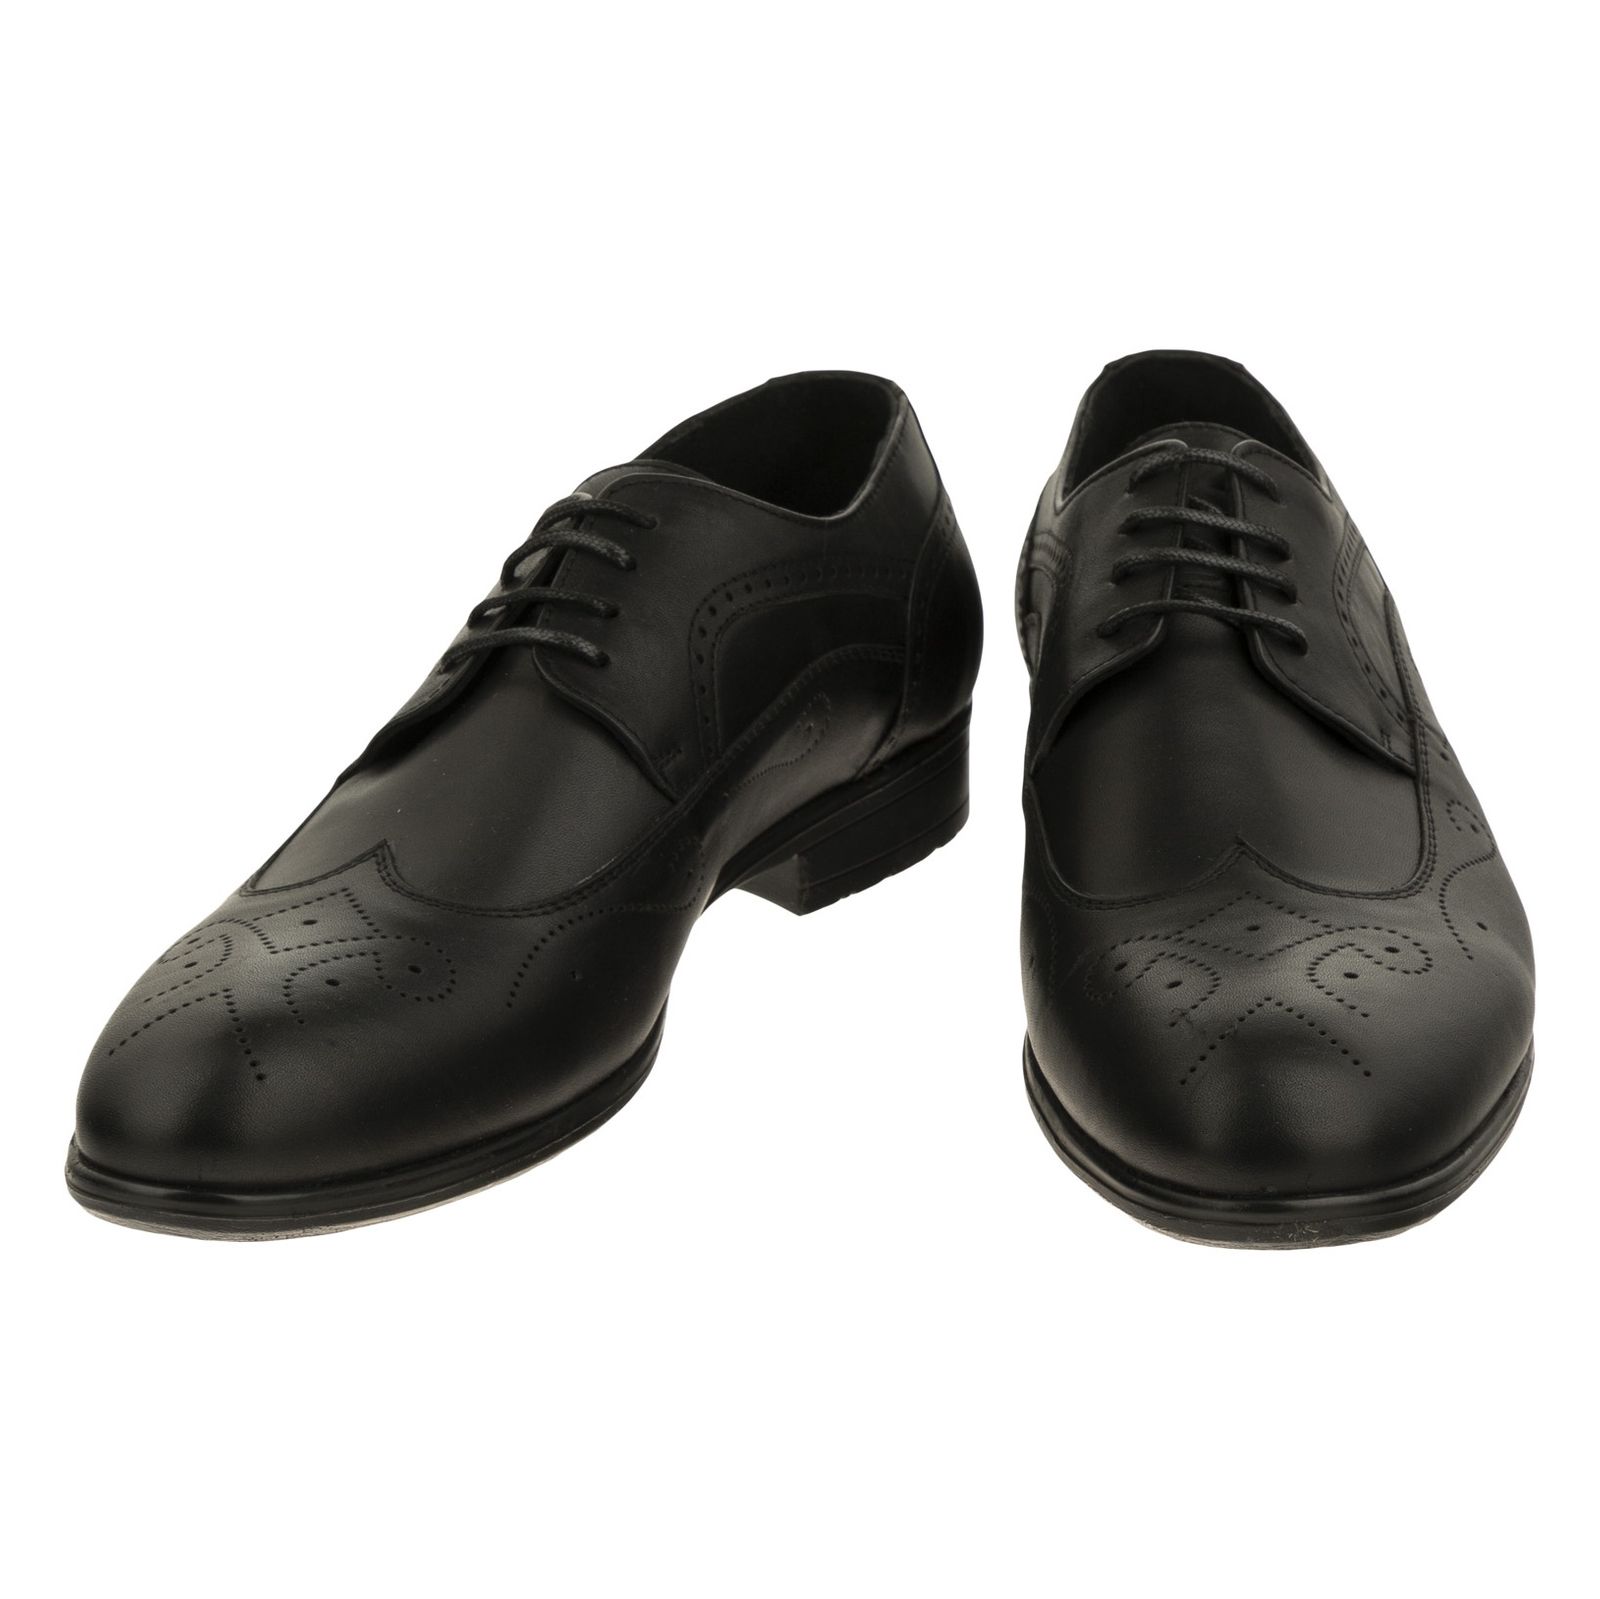 کفش مردانه گاندو مدل 99-710 - مشکی - 4